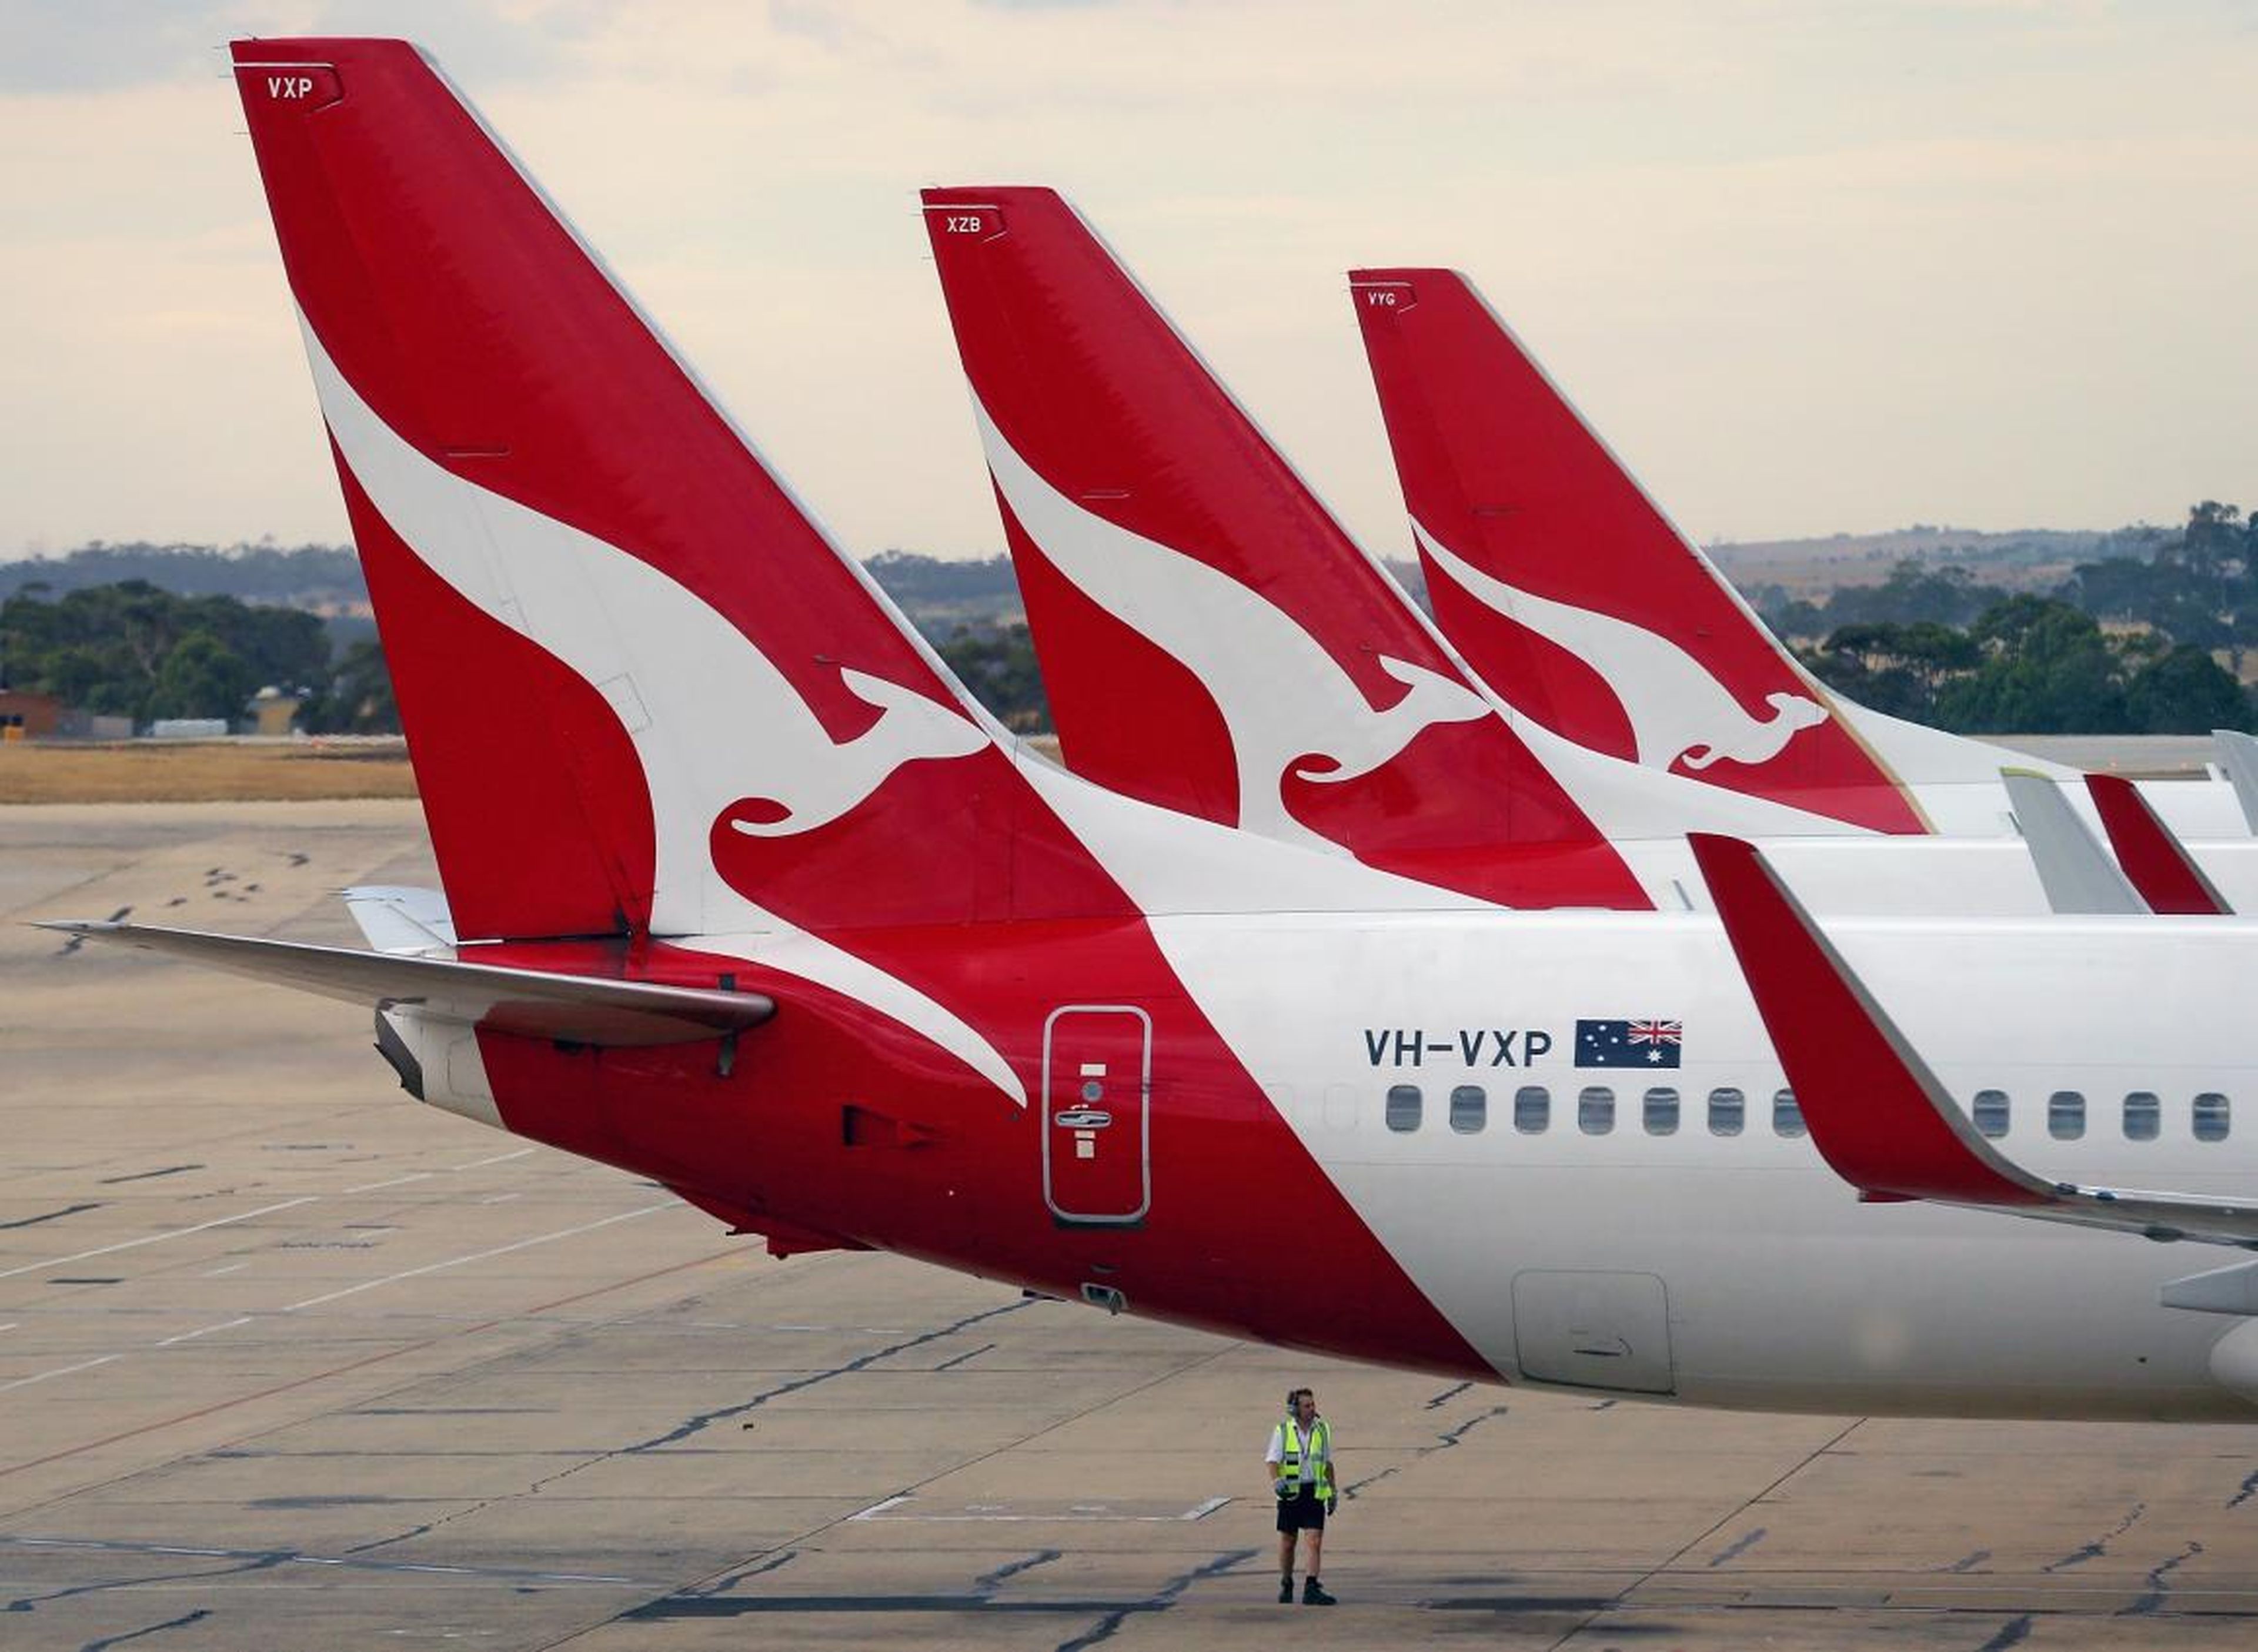 Qantas Airways.